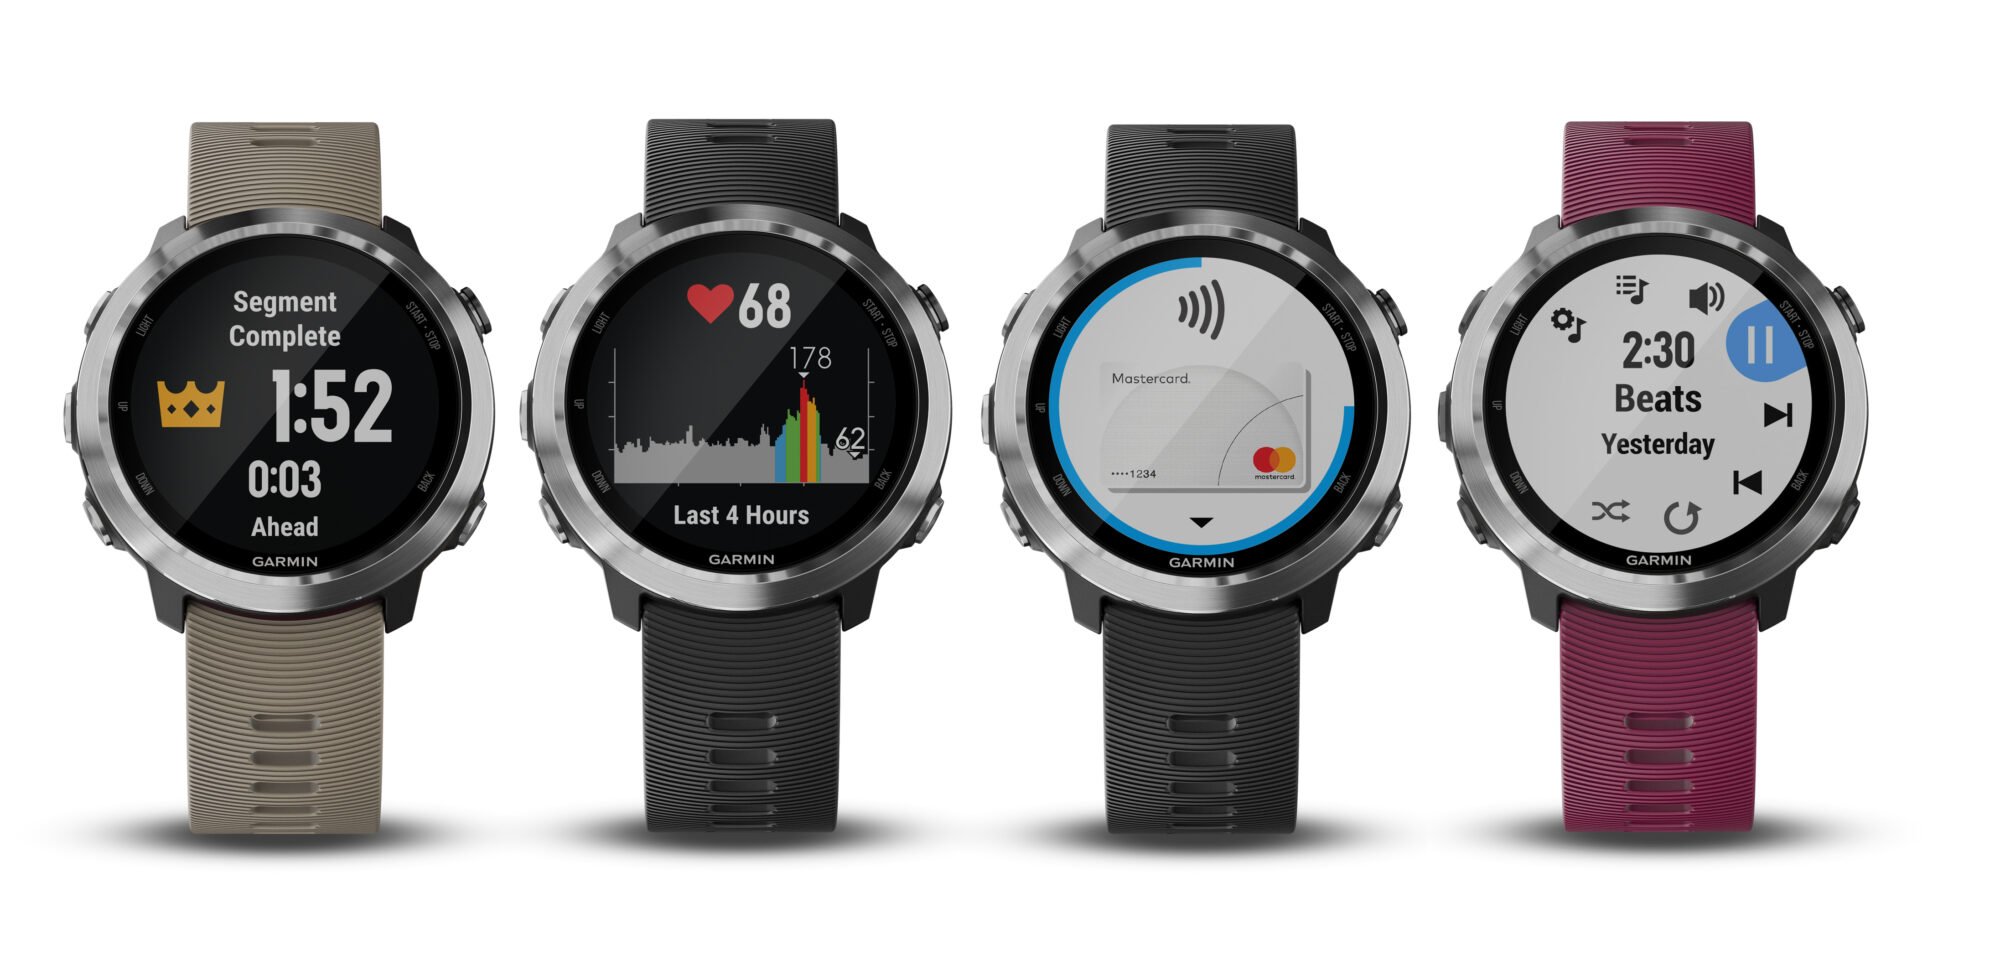 Garmin presenterar Forerunner 645 Music – en löparklocka med GPS, integrerad musik och Garmin Pay